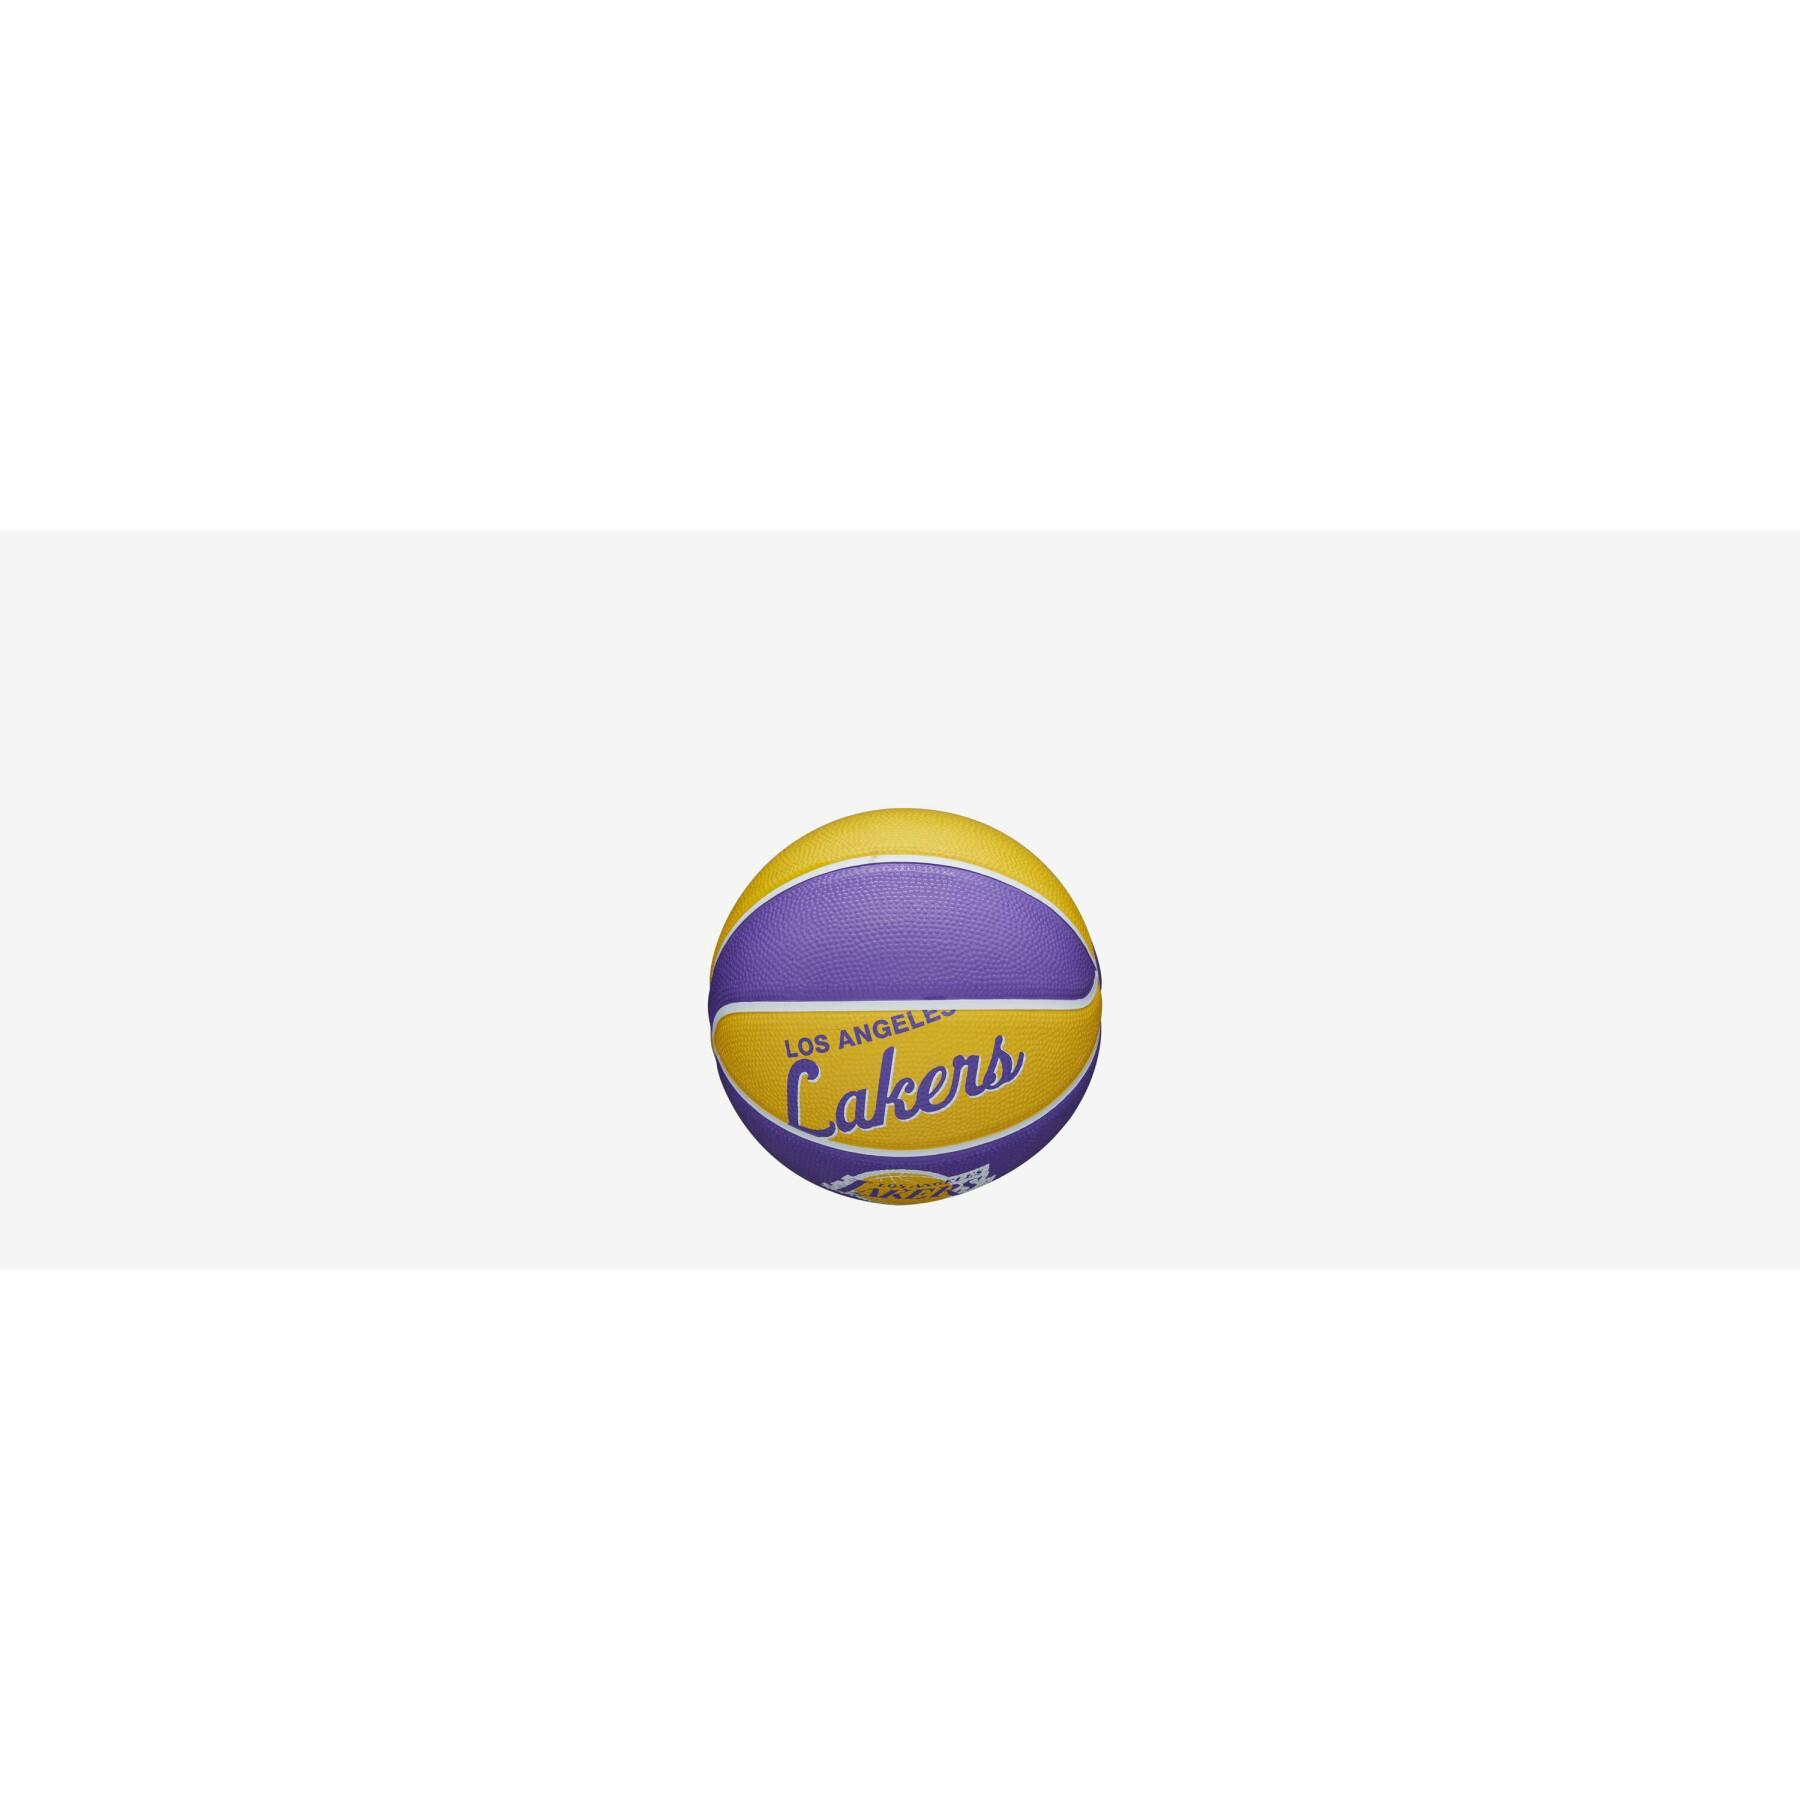 Mini balão Los Angeles Lakers Nba Team Retro 2021/22